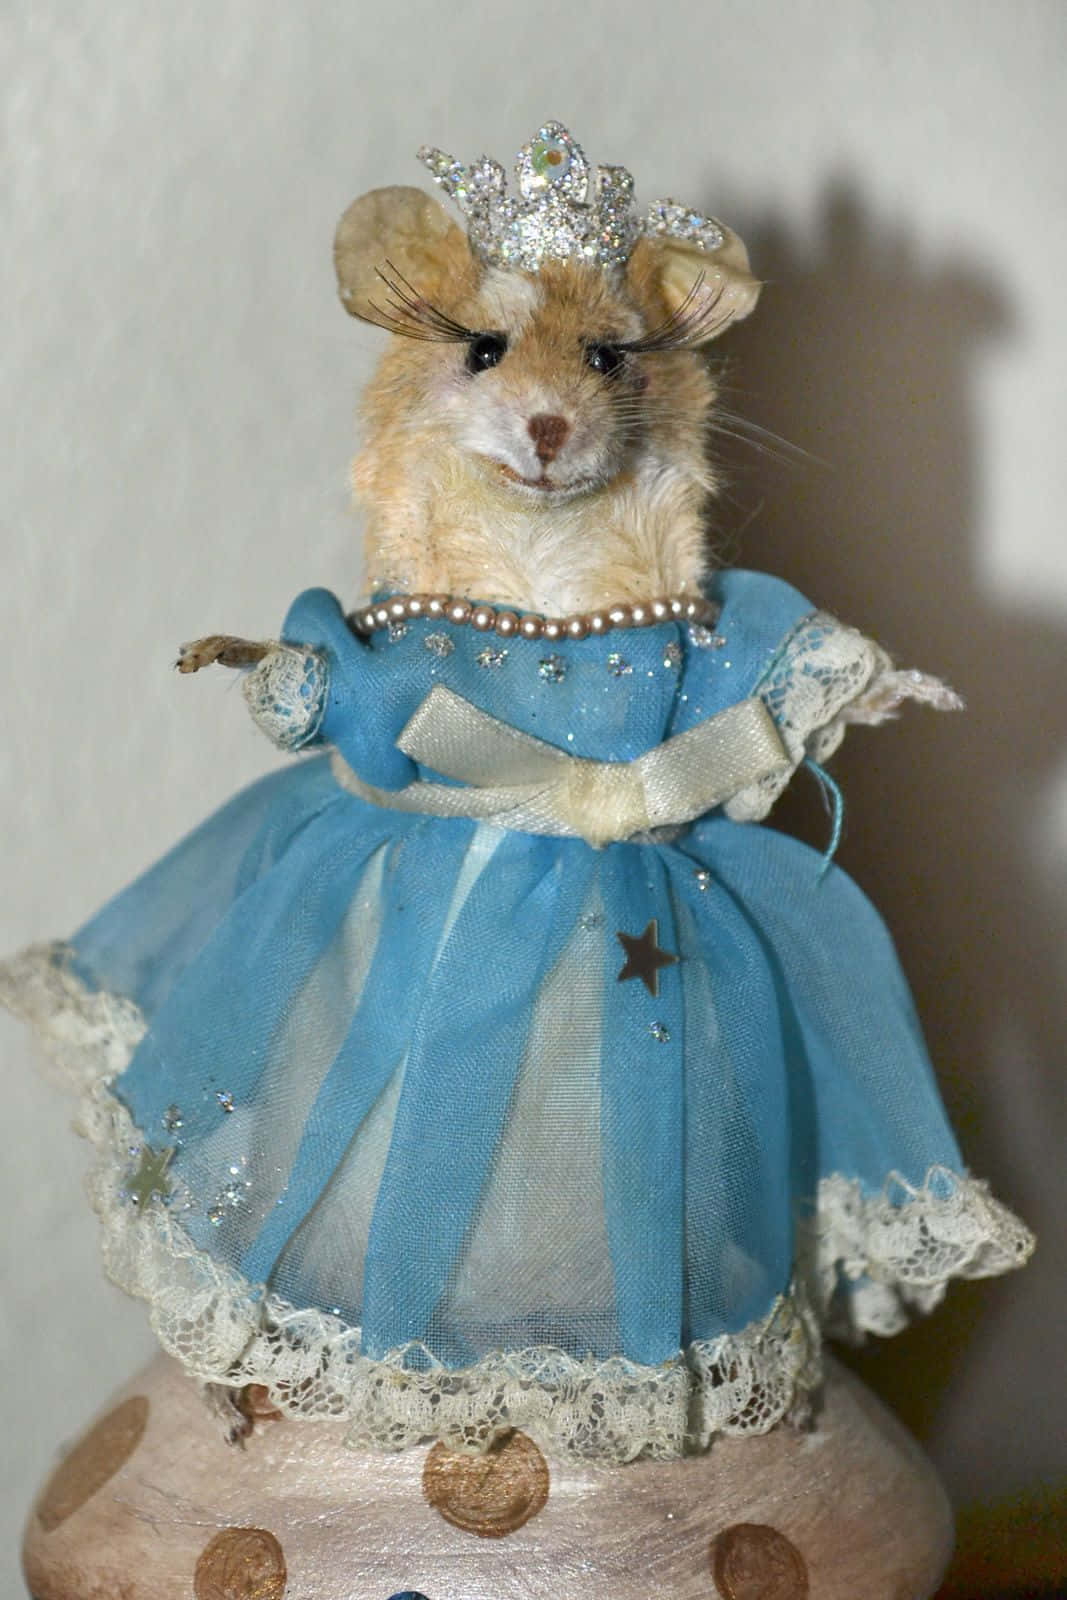 Lustigesbild Von Einer Ratte In Einem Blauen Kleid